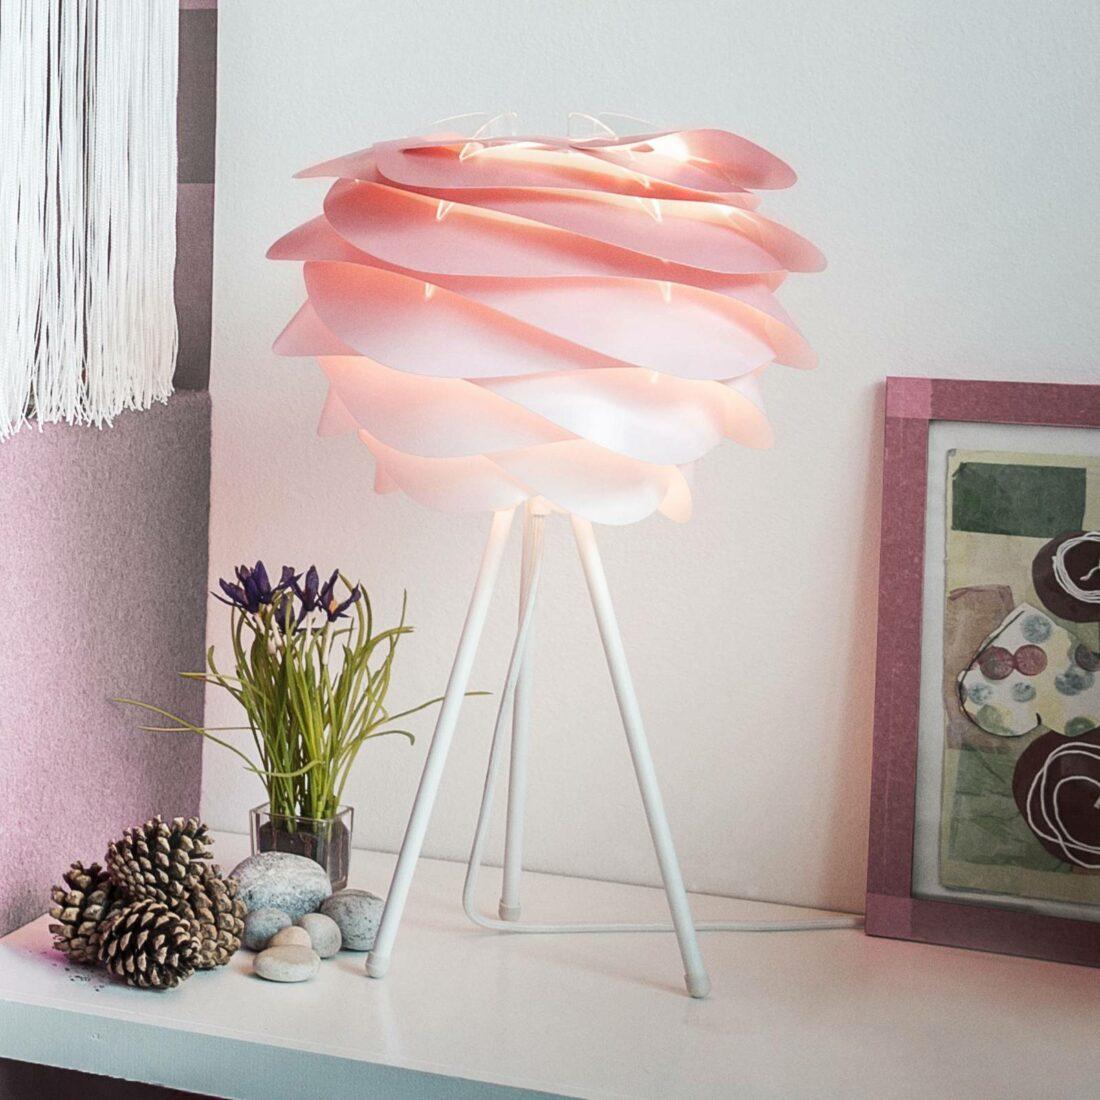 UMAGE Carmina Mini stolní lampa růžová/bílá